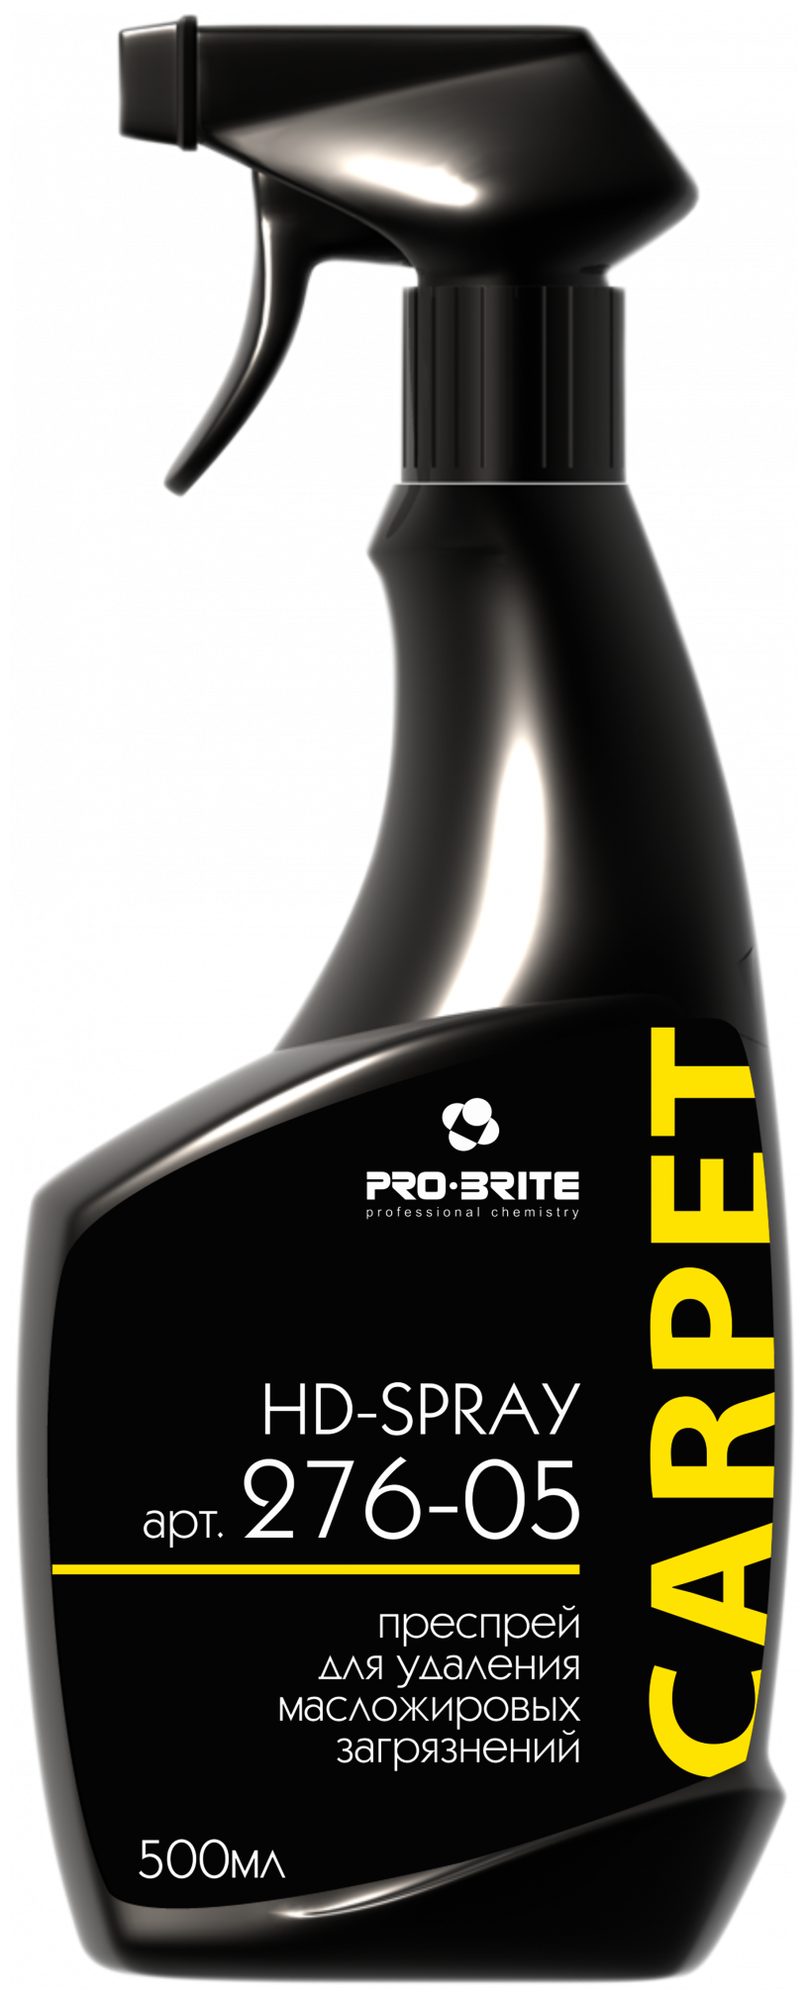 276-05 PRO-BRITE HD-SPRAY Преспрей для удаления жировых загрязнений. Для сухой и влажной чистки синтетического текстиля. PH 6.5/ 0.5л - фотография № 1